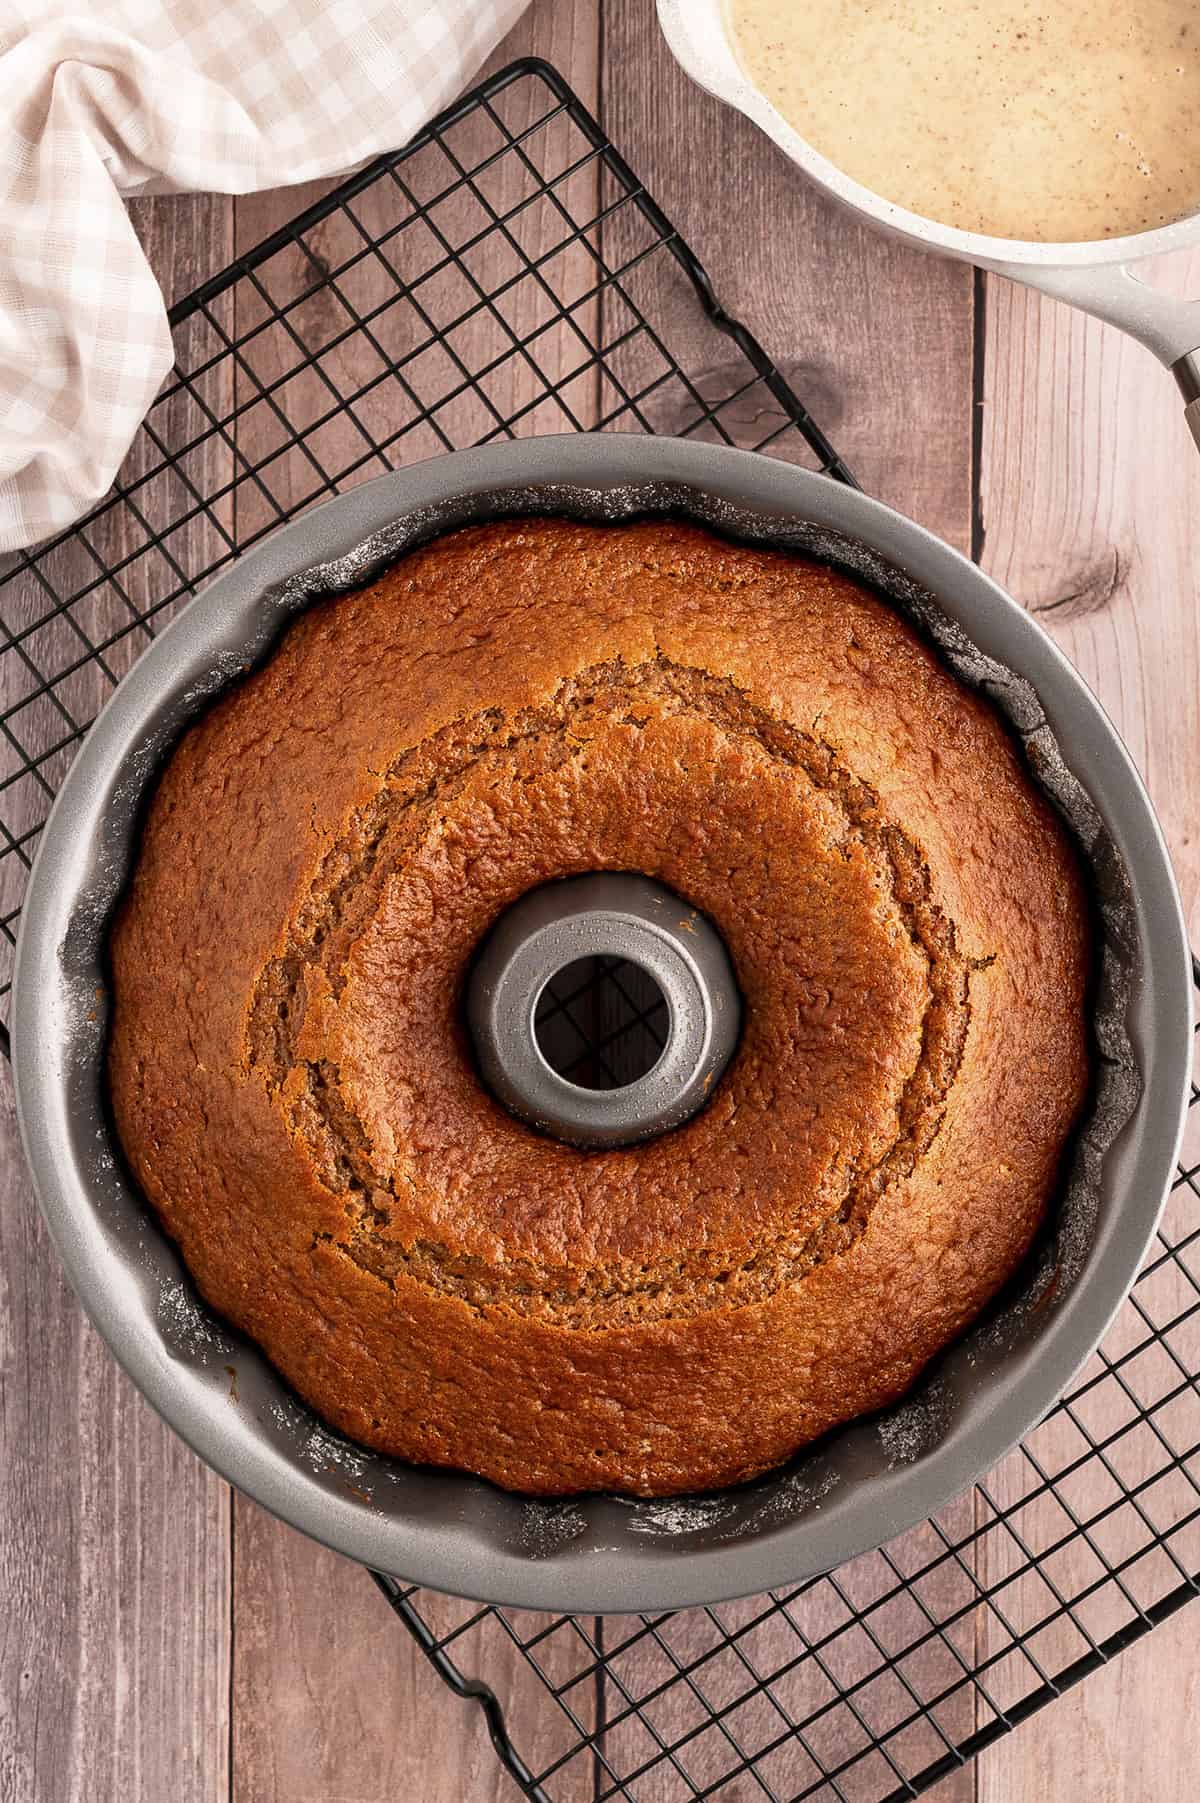 Baked cake in bundt pan.